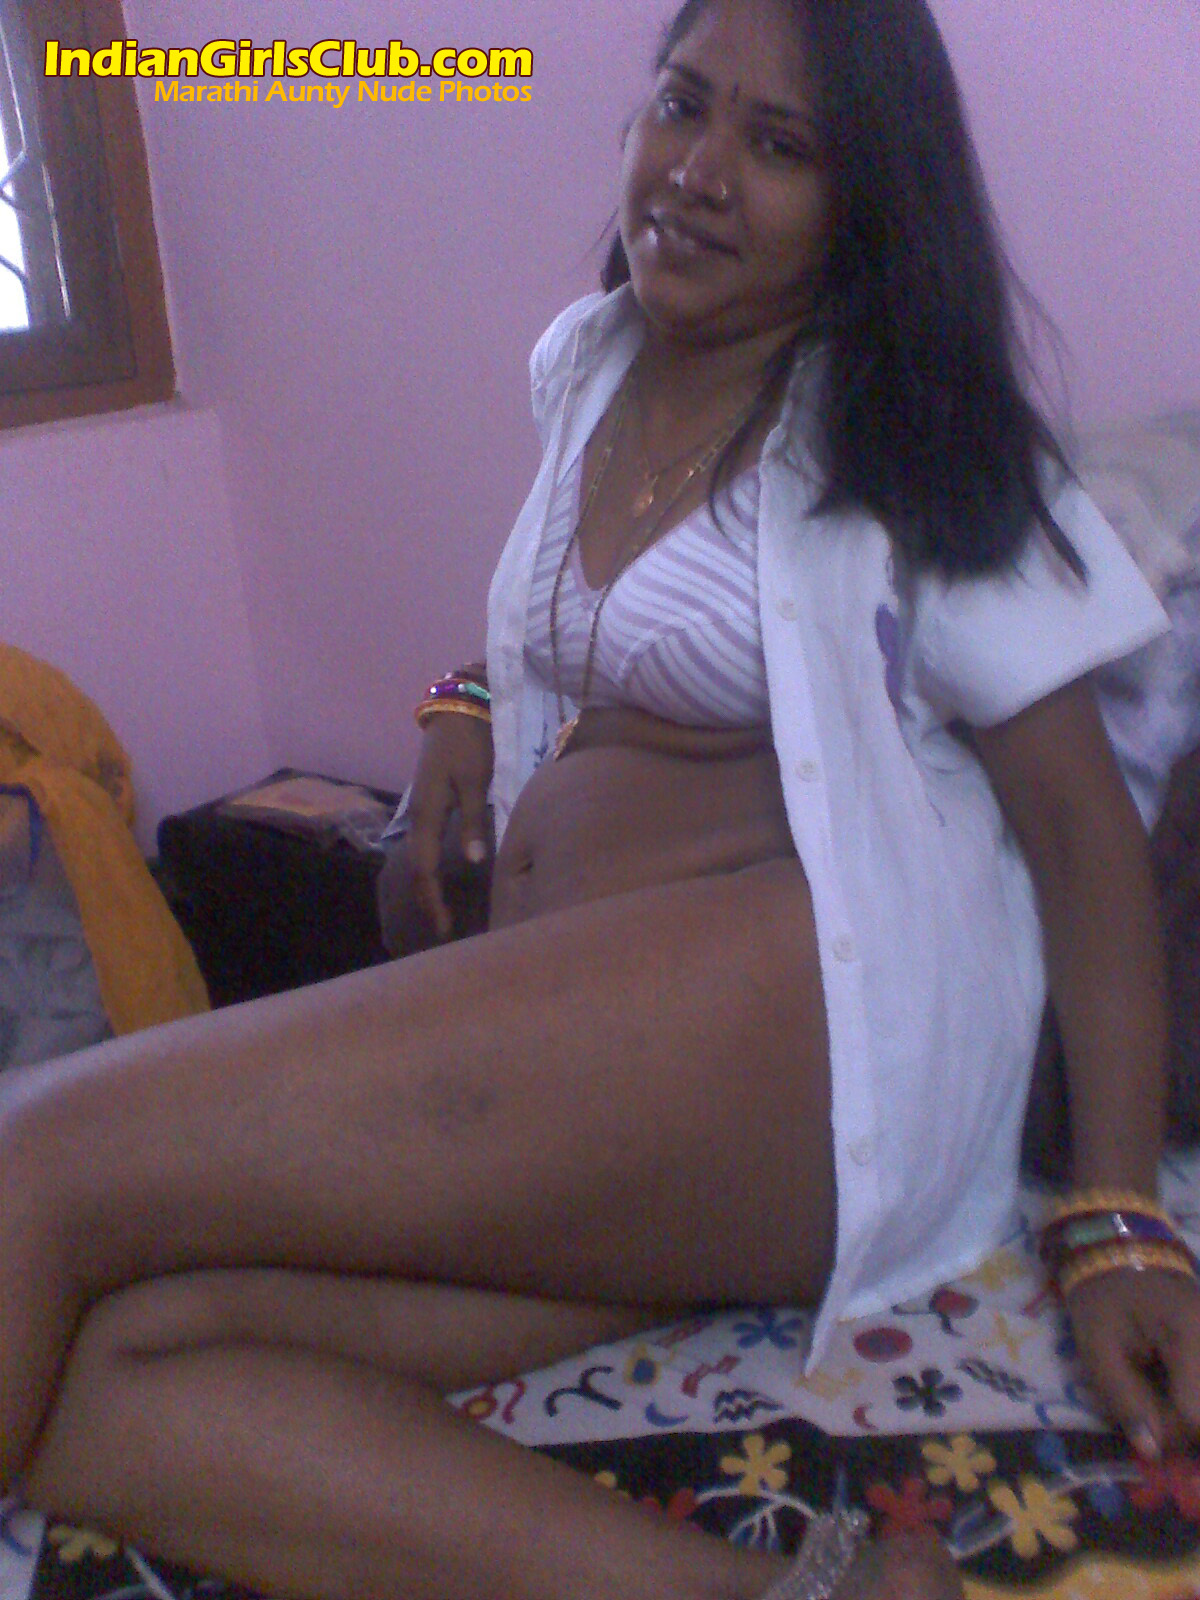 Marathi women nude show